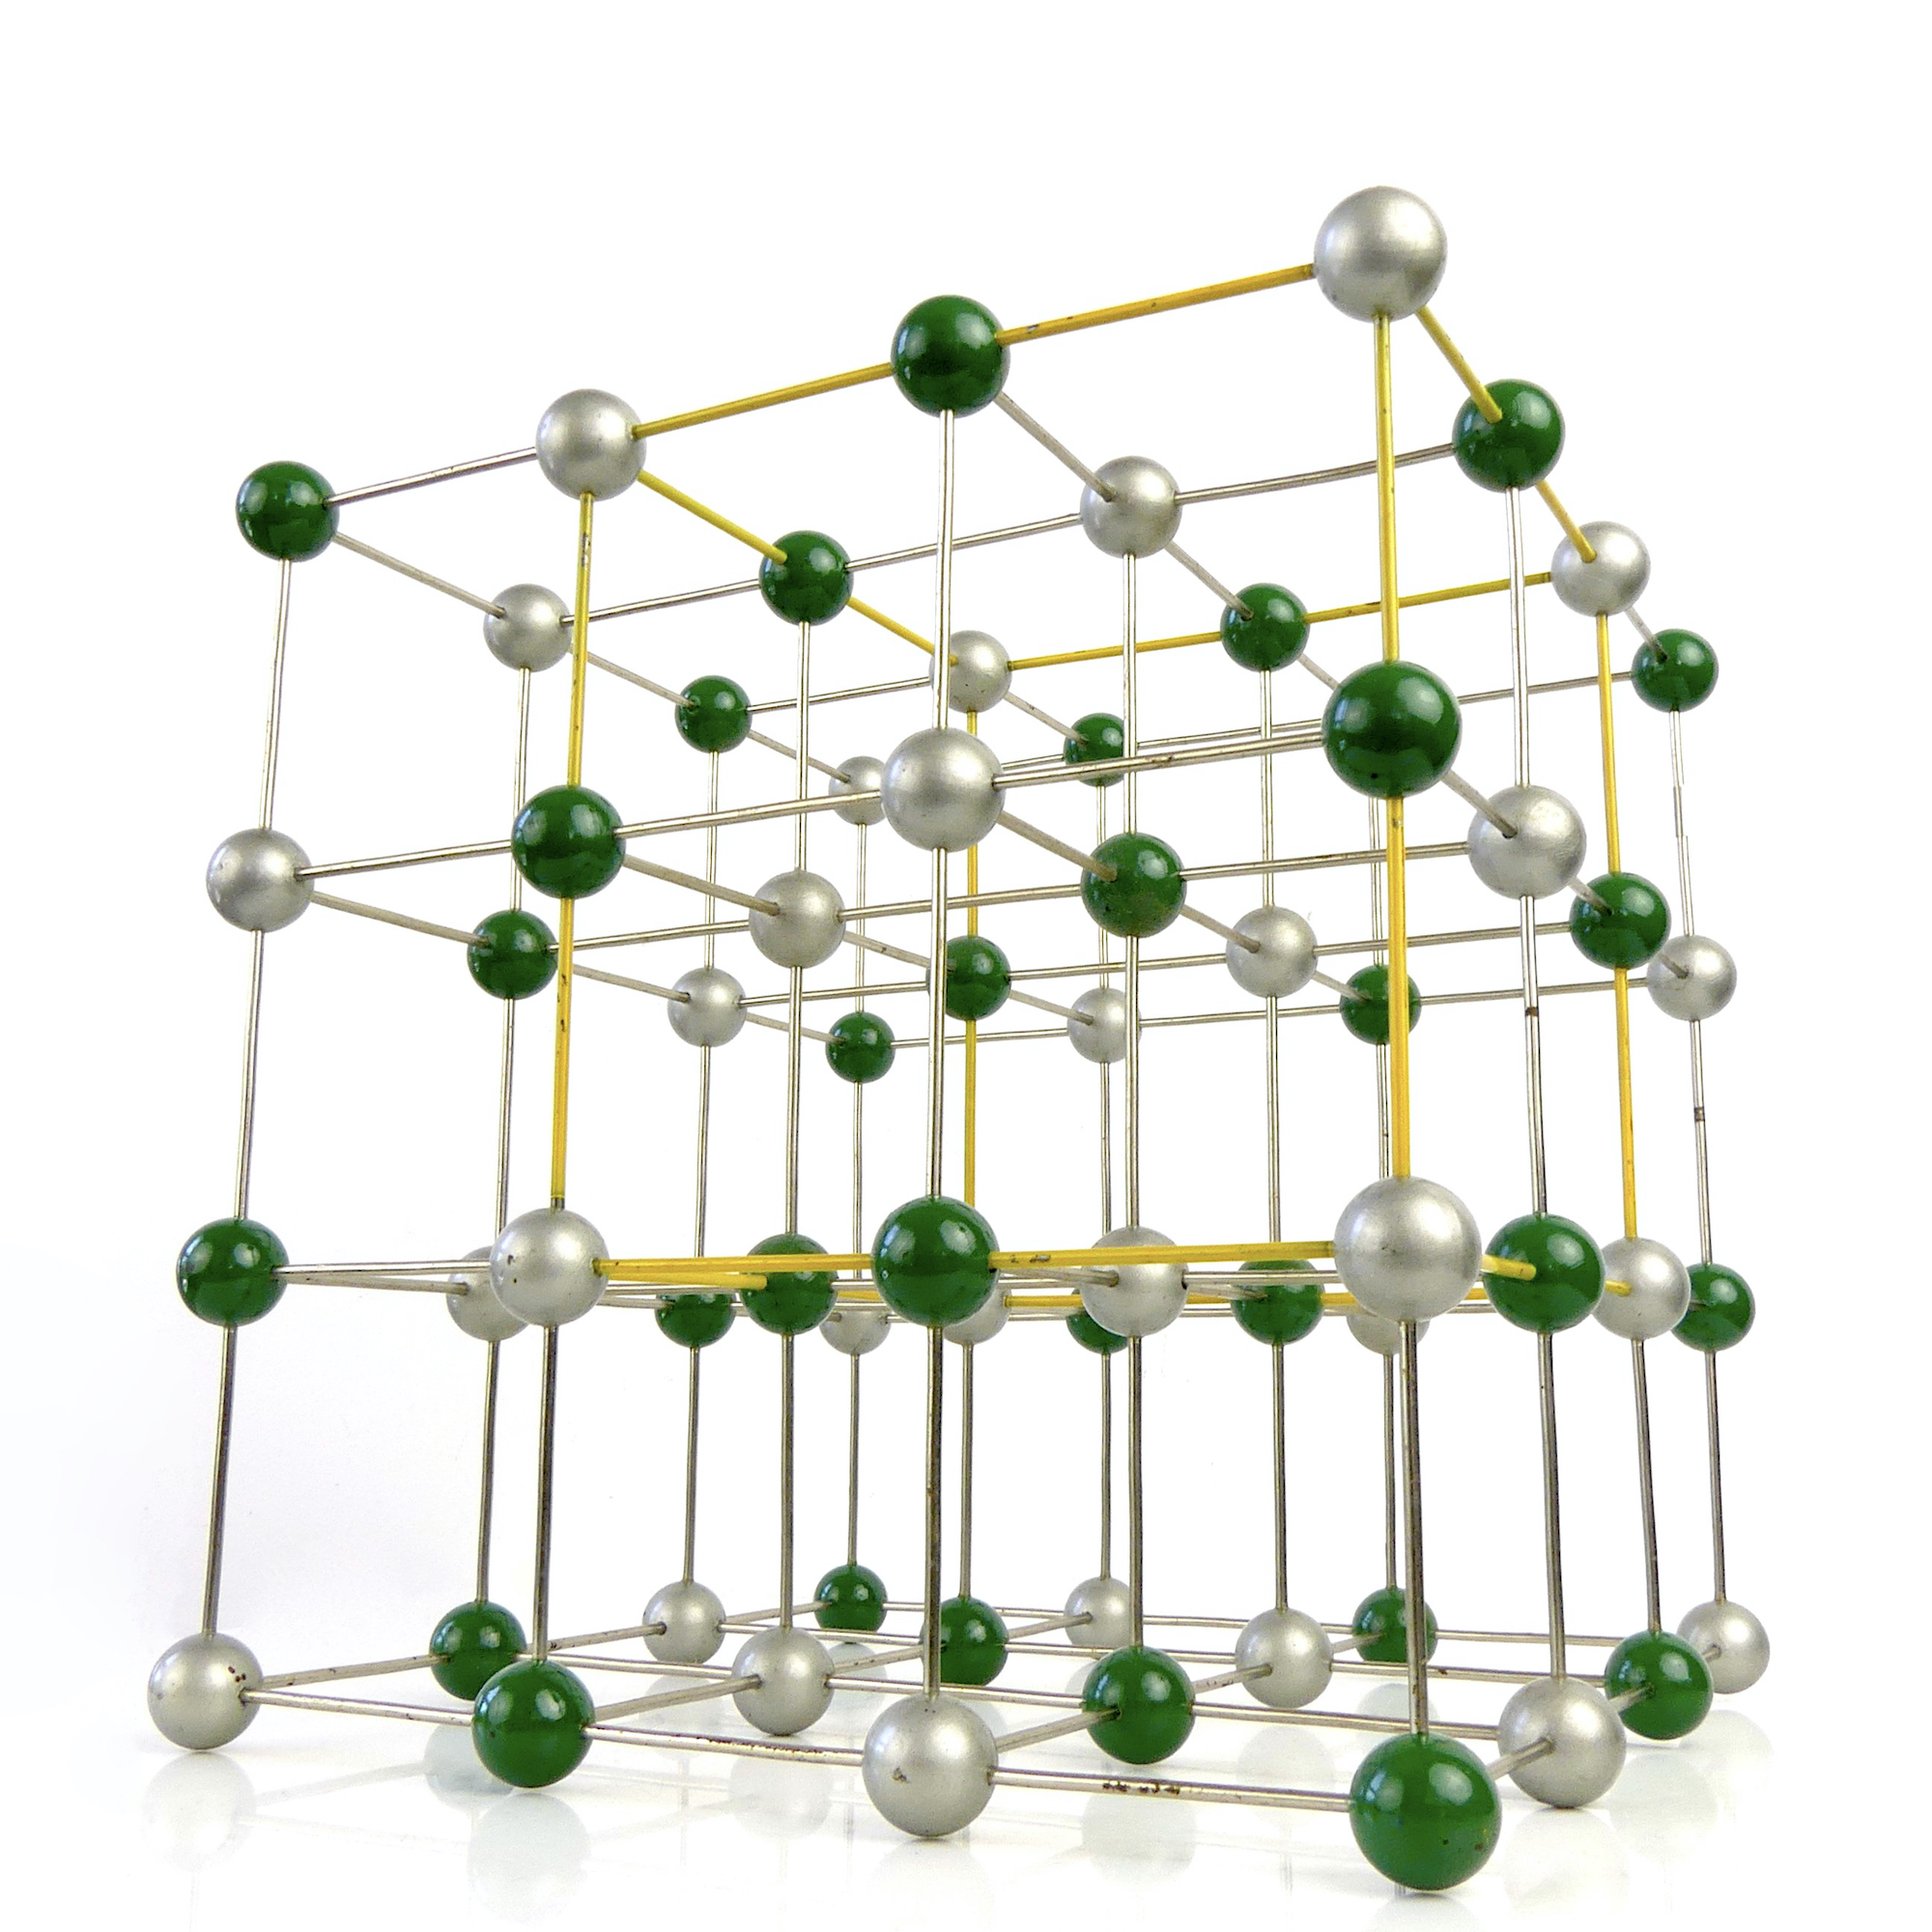 Structure cristalline de chlorure de sodium Tchécoslovaquie 1950